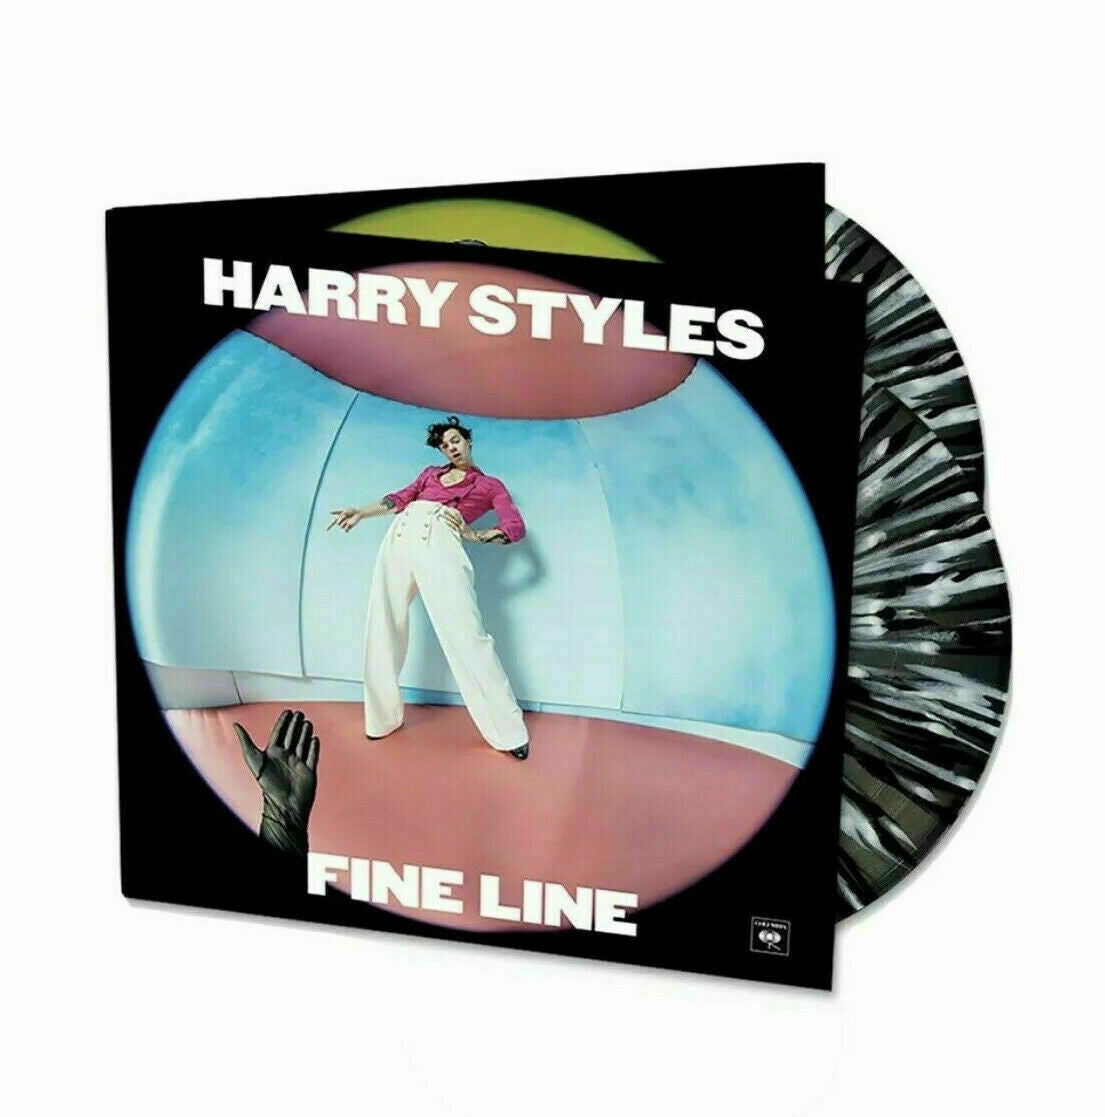 Harry Styles - Fine Line: Limited Black + White Splatter Vinyl 2LP